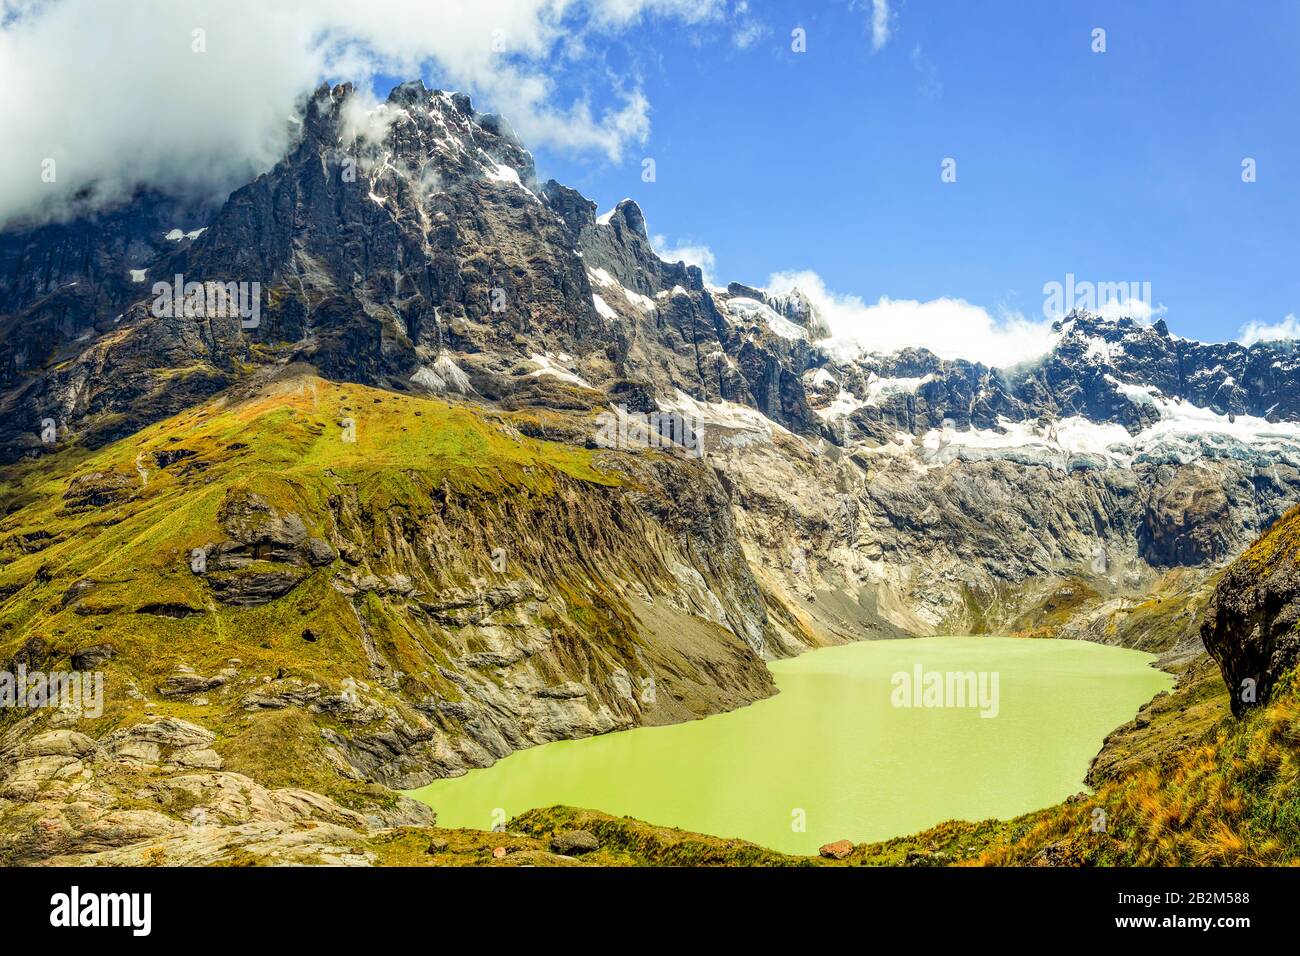 El Altar Volcano In Sangay National Park Ecuador Composite Image Stock Photo